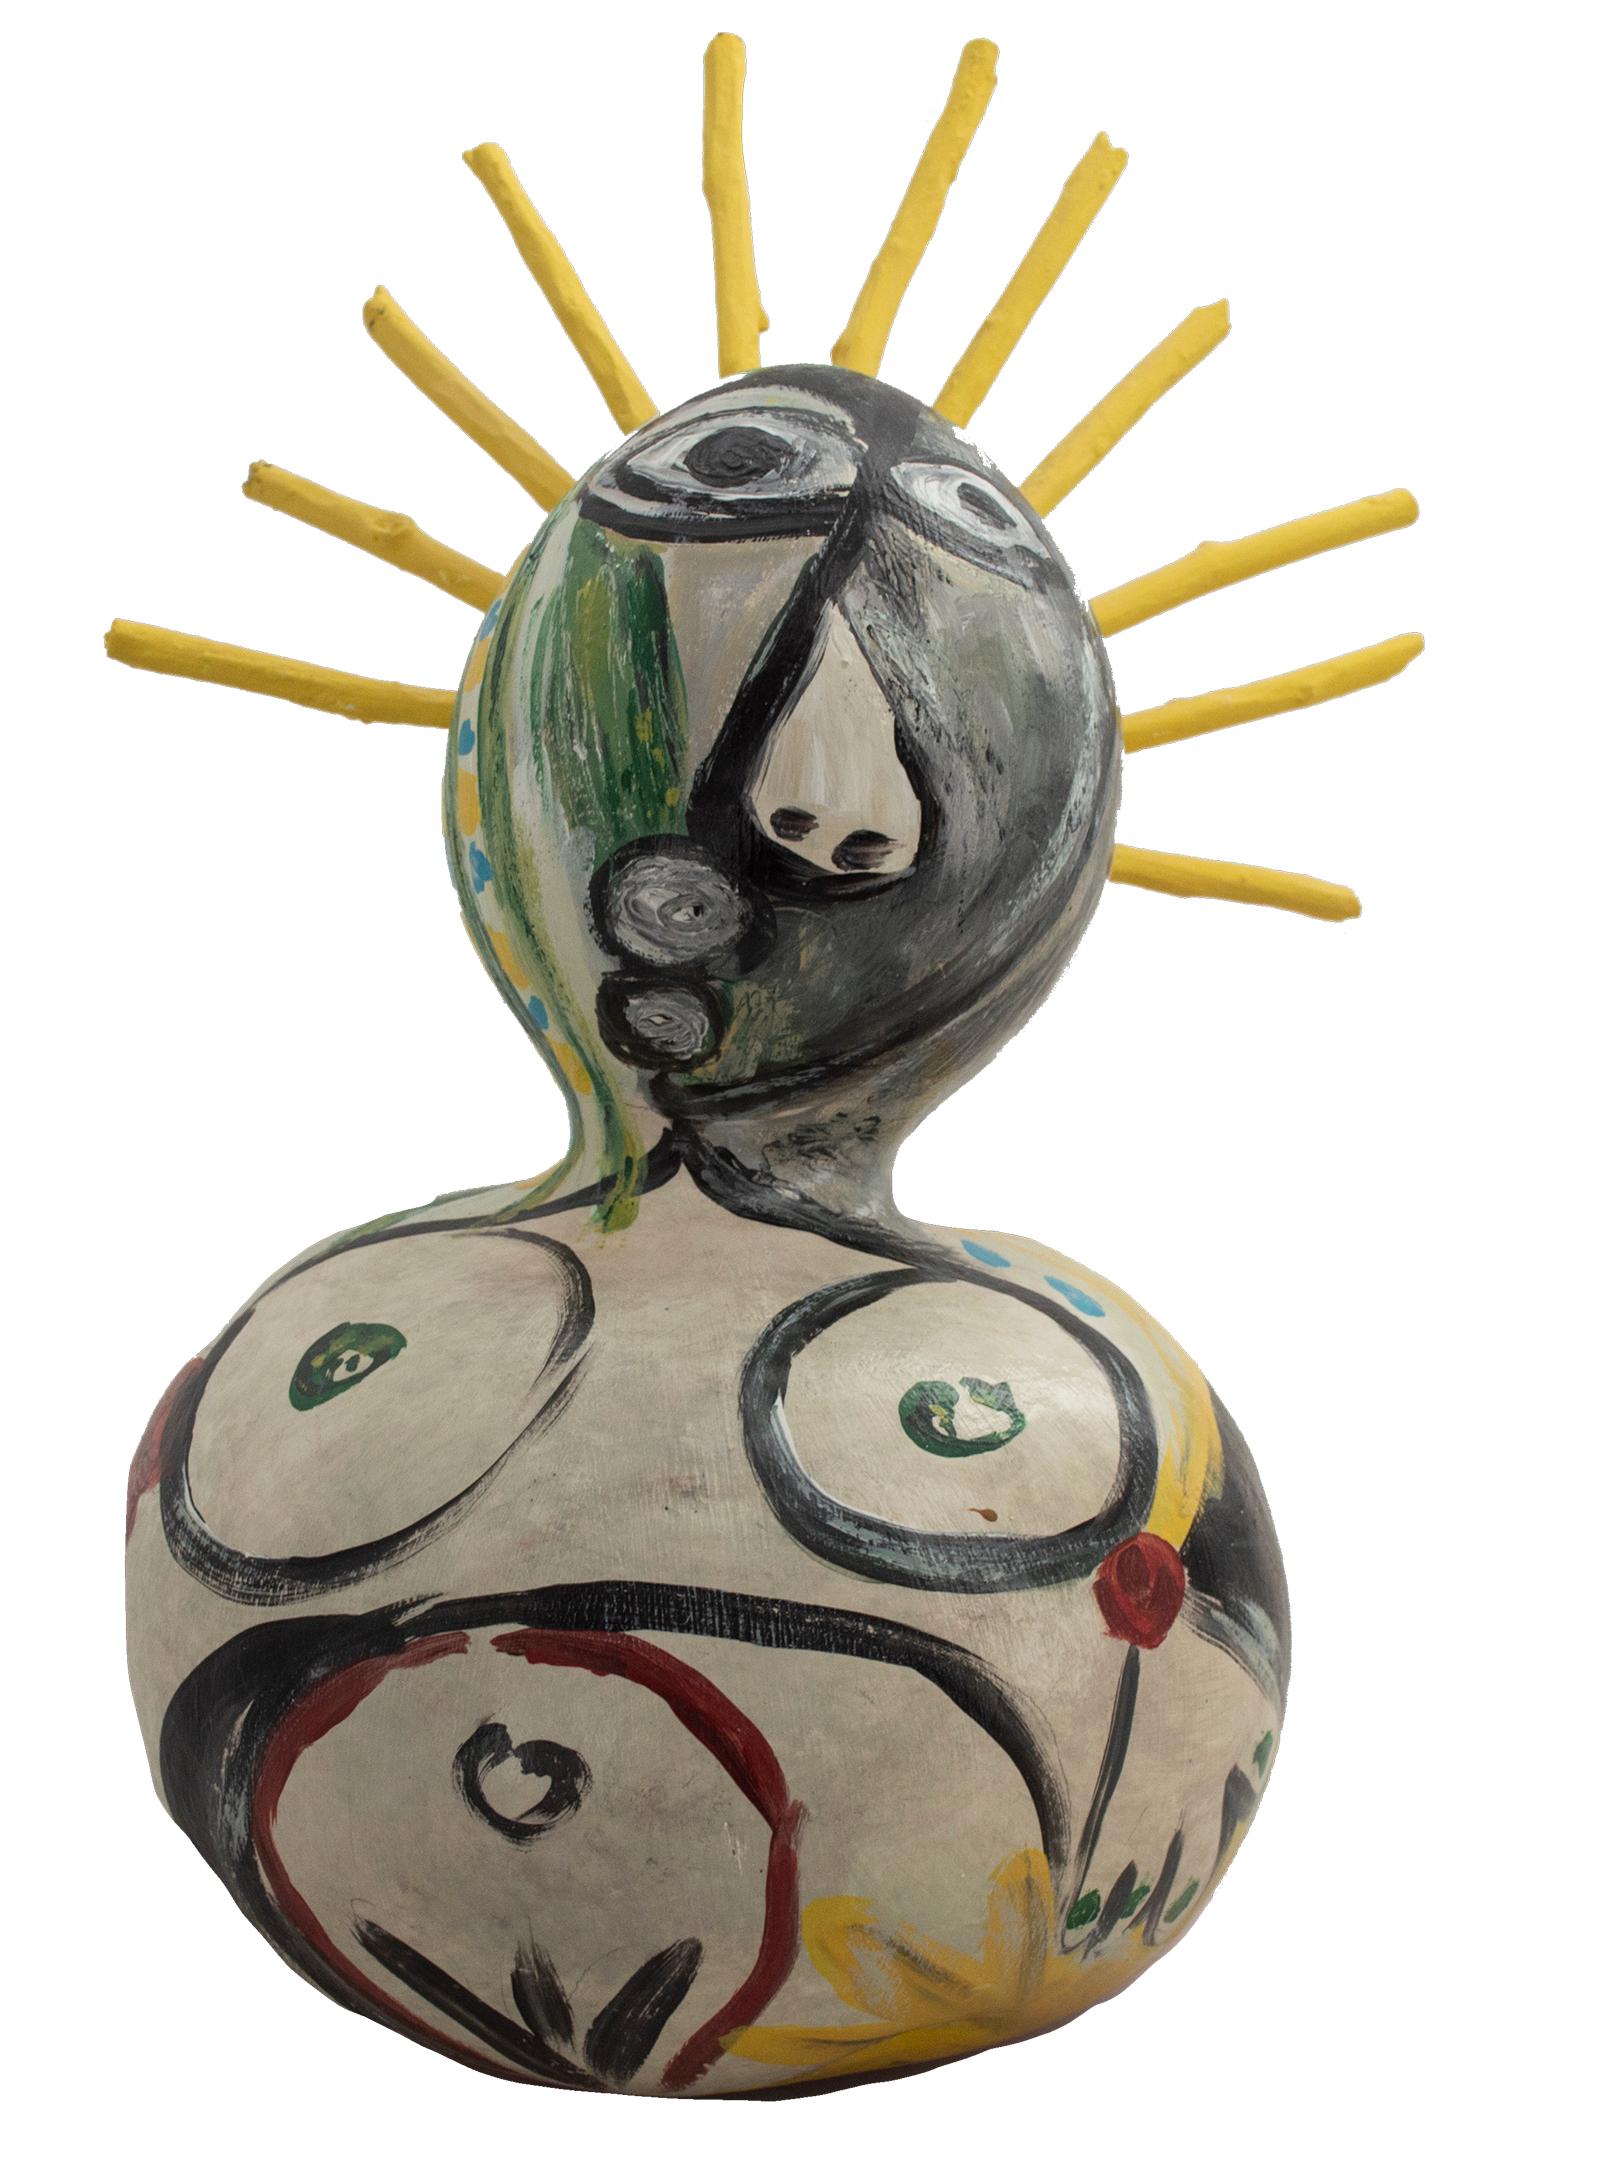 "Hommage an Picasso" ist ein von Kyle Zubatsky signiertes Acryl auf Kürbis. Diese Skulptur zeigt eine nackte Frau. Ihr Körper ist im unteren und größeren Teil der Kalebasse dargestellt, alles ist kreisförmig. Sie hat ein schmollendes Gesicht und